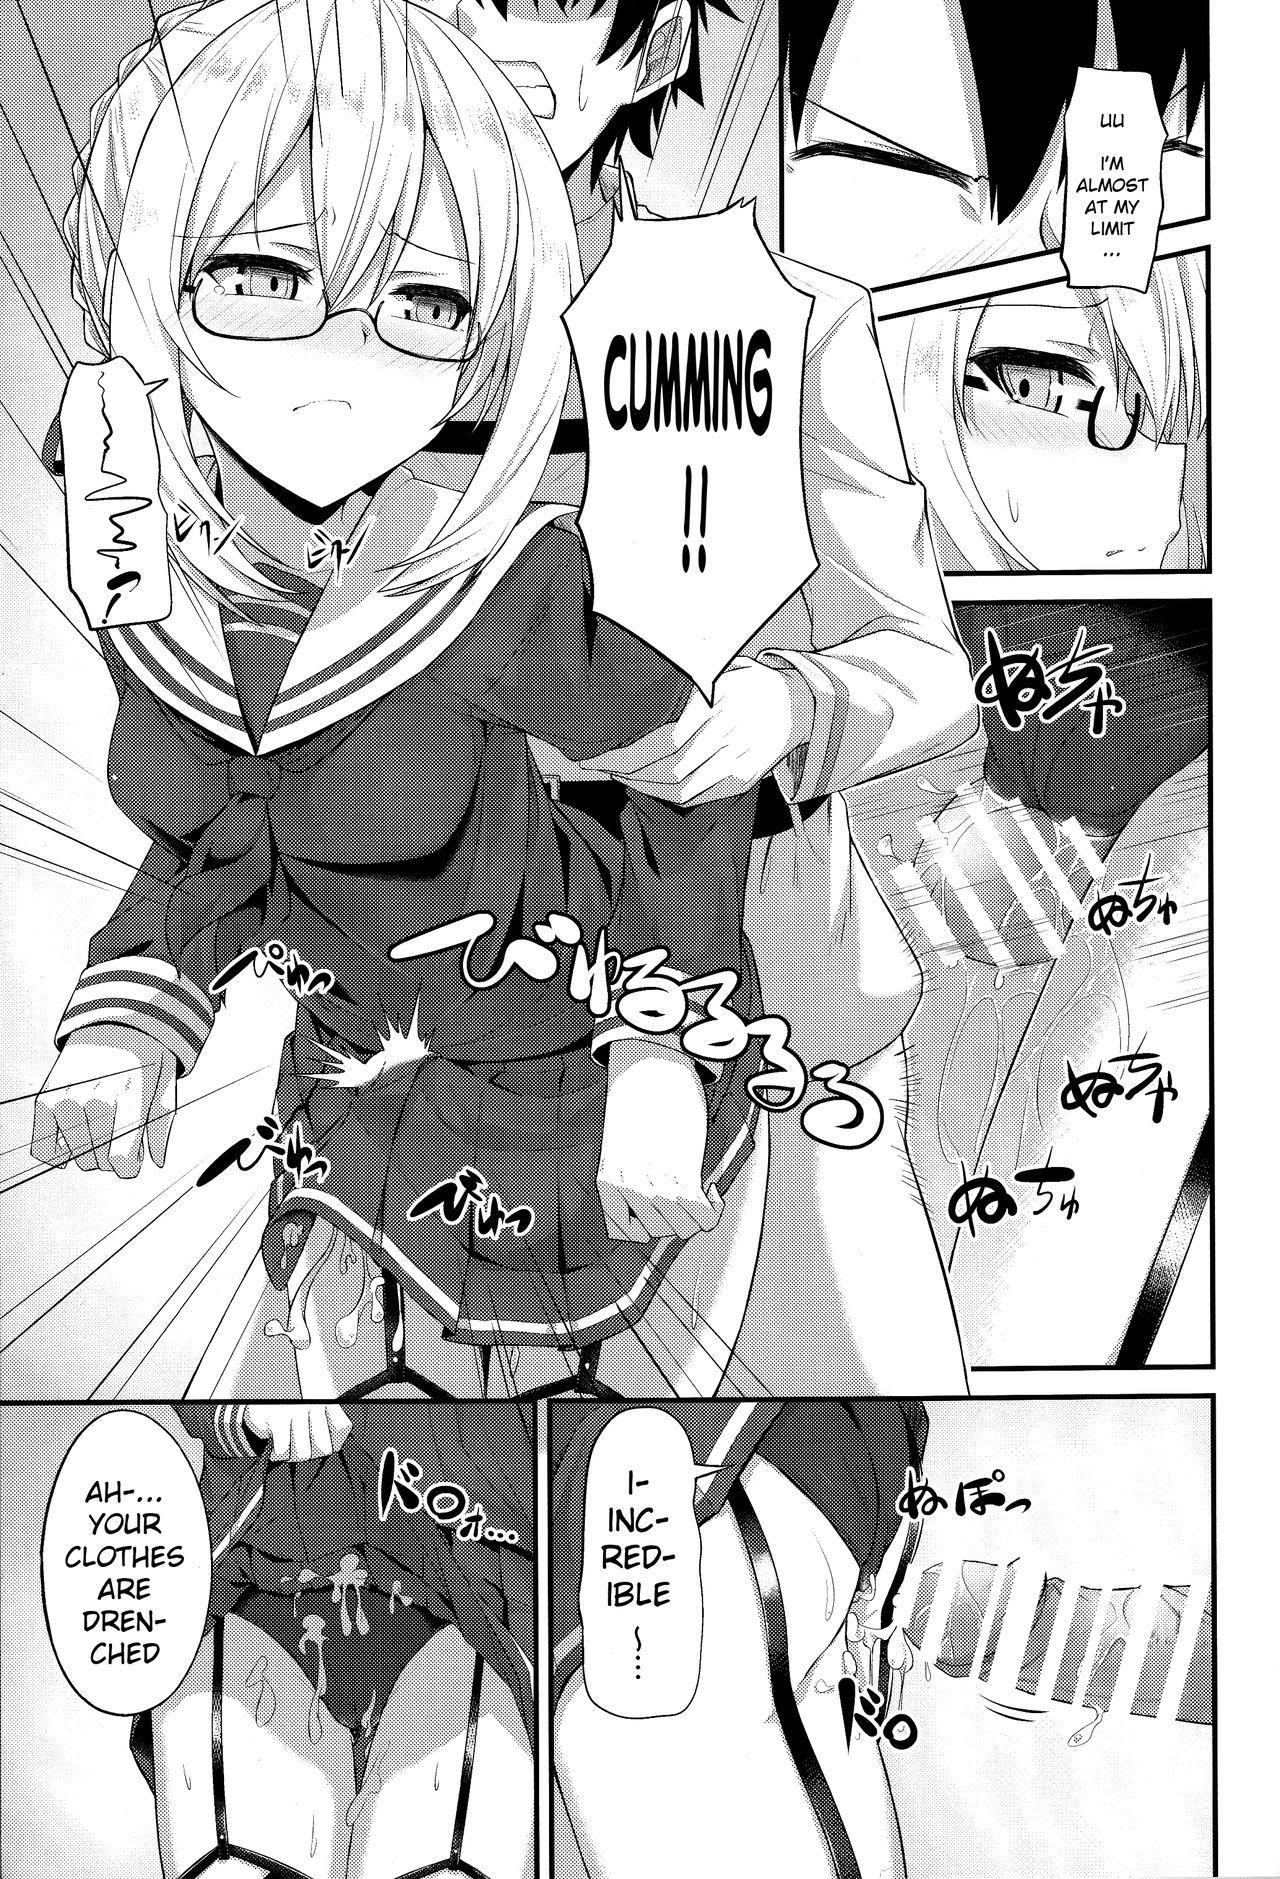 Mas Watashi, Sei Heroine ni Narimasu. - I will be a sexual hiroine. - Fate grand order Com - Page 12